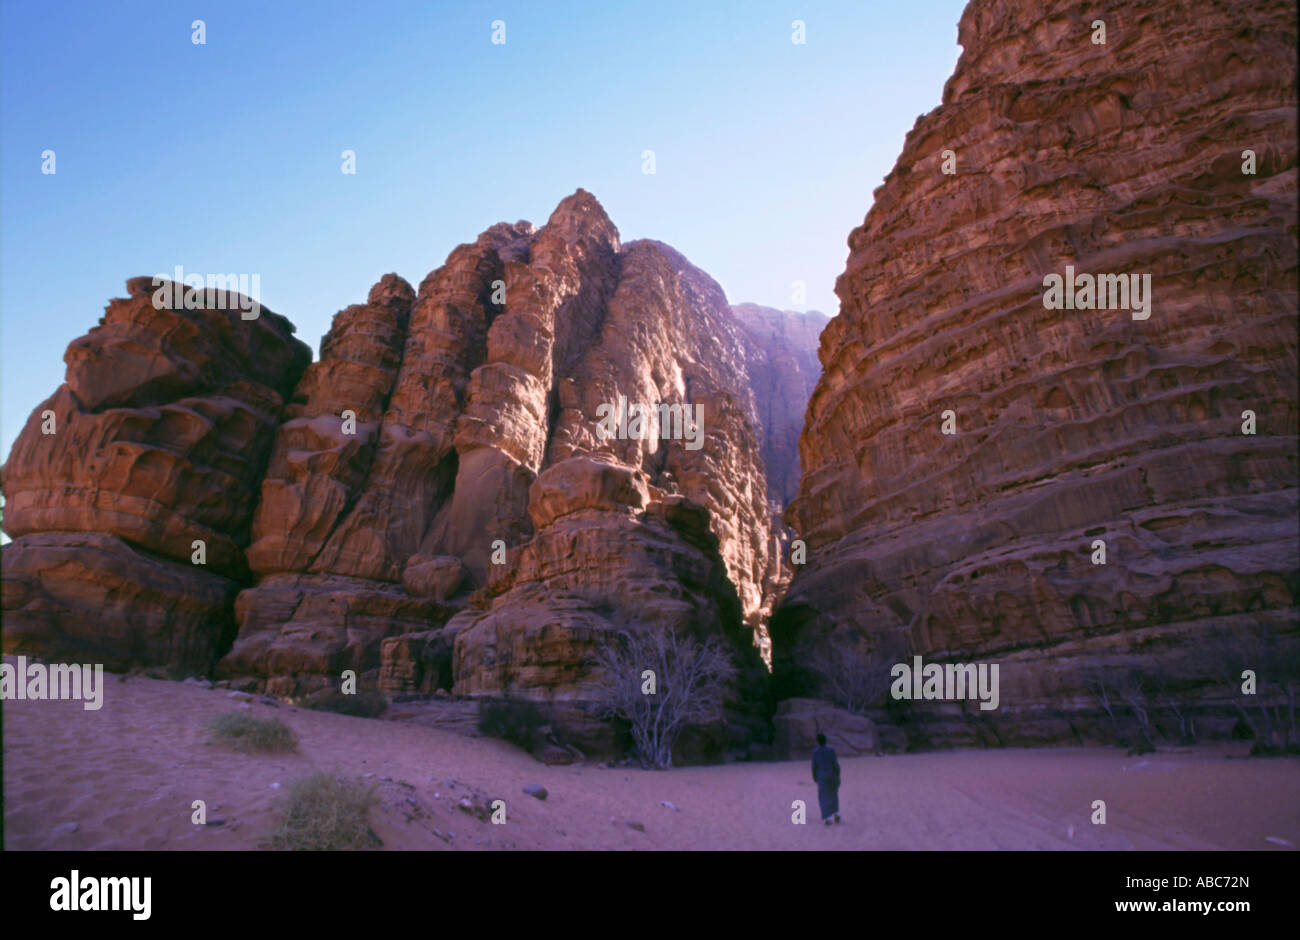 Desierto de Wadi Rum en Jordania emplazamiento fueron filmadas películas como Indiana Jones, Laurence de Arabia o Planeta rojo Foto de stock